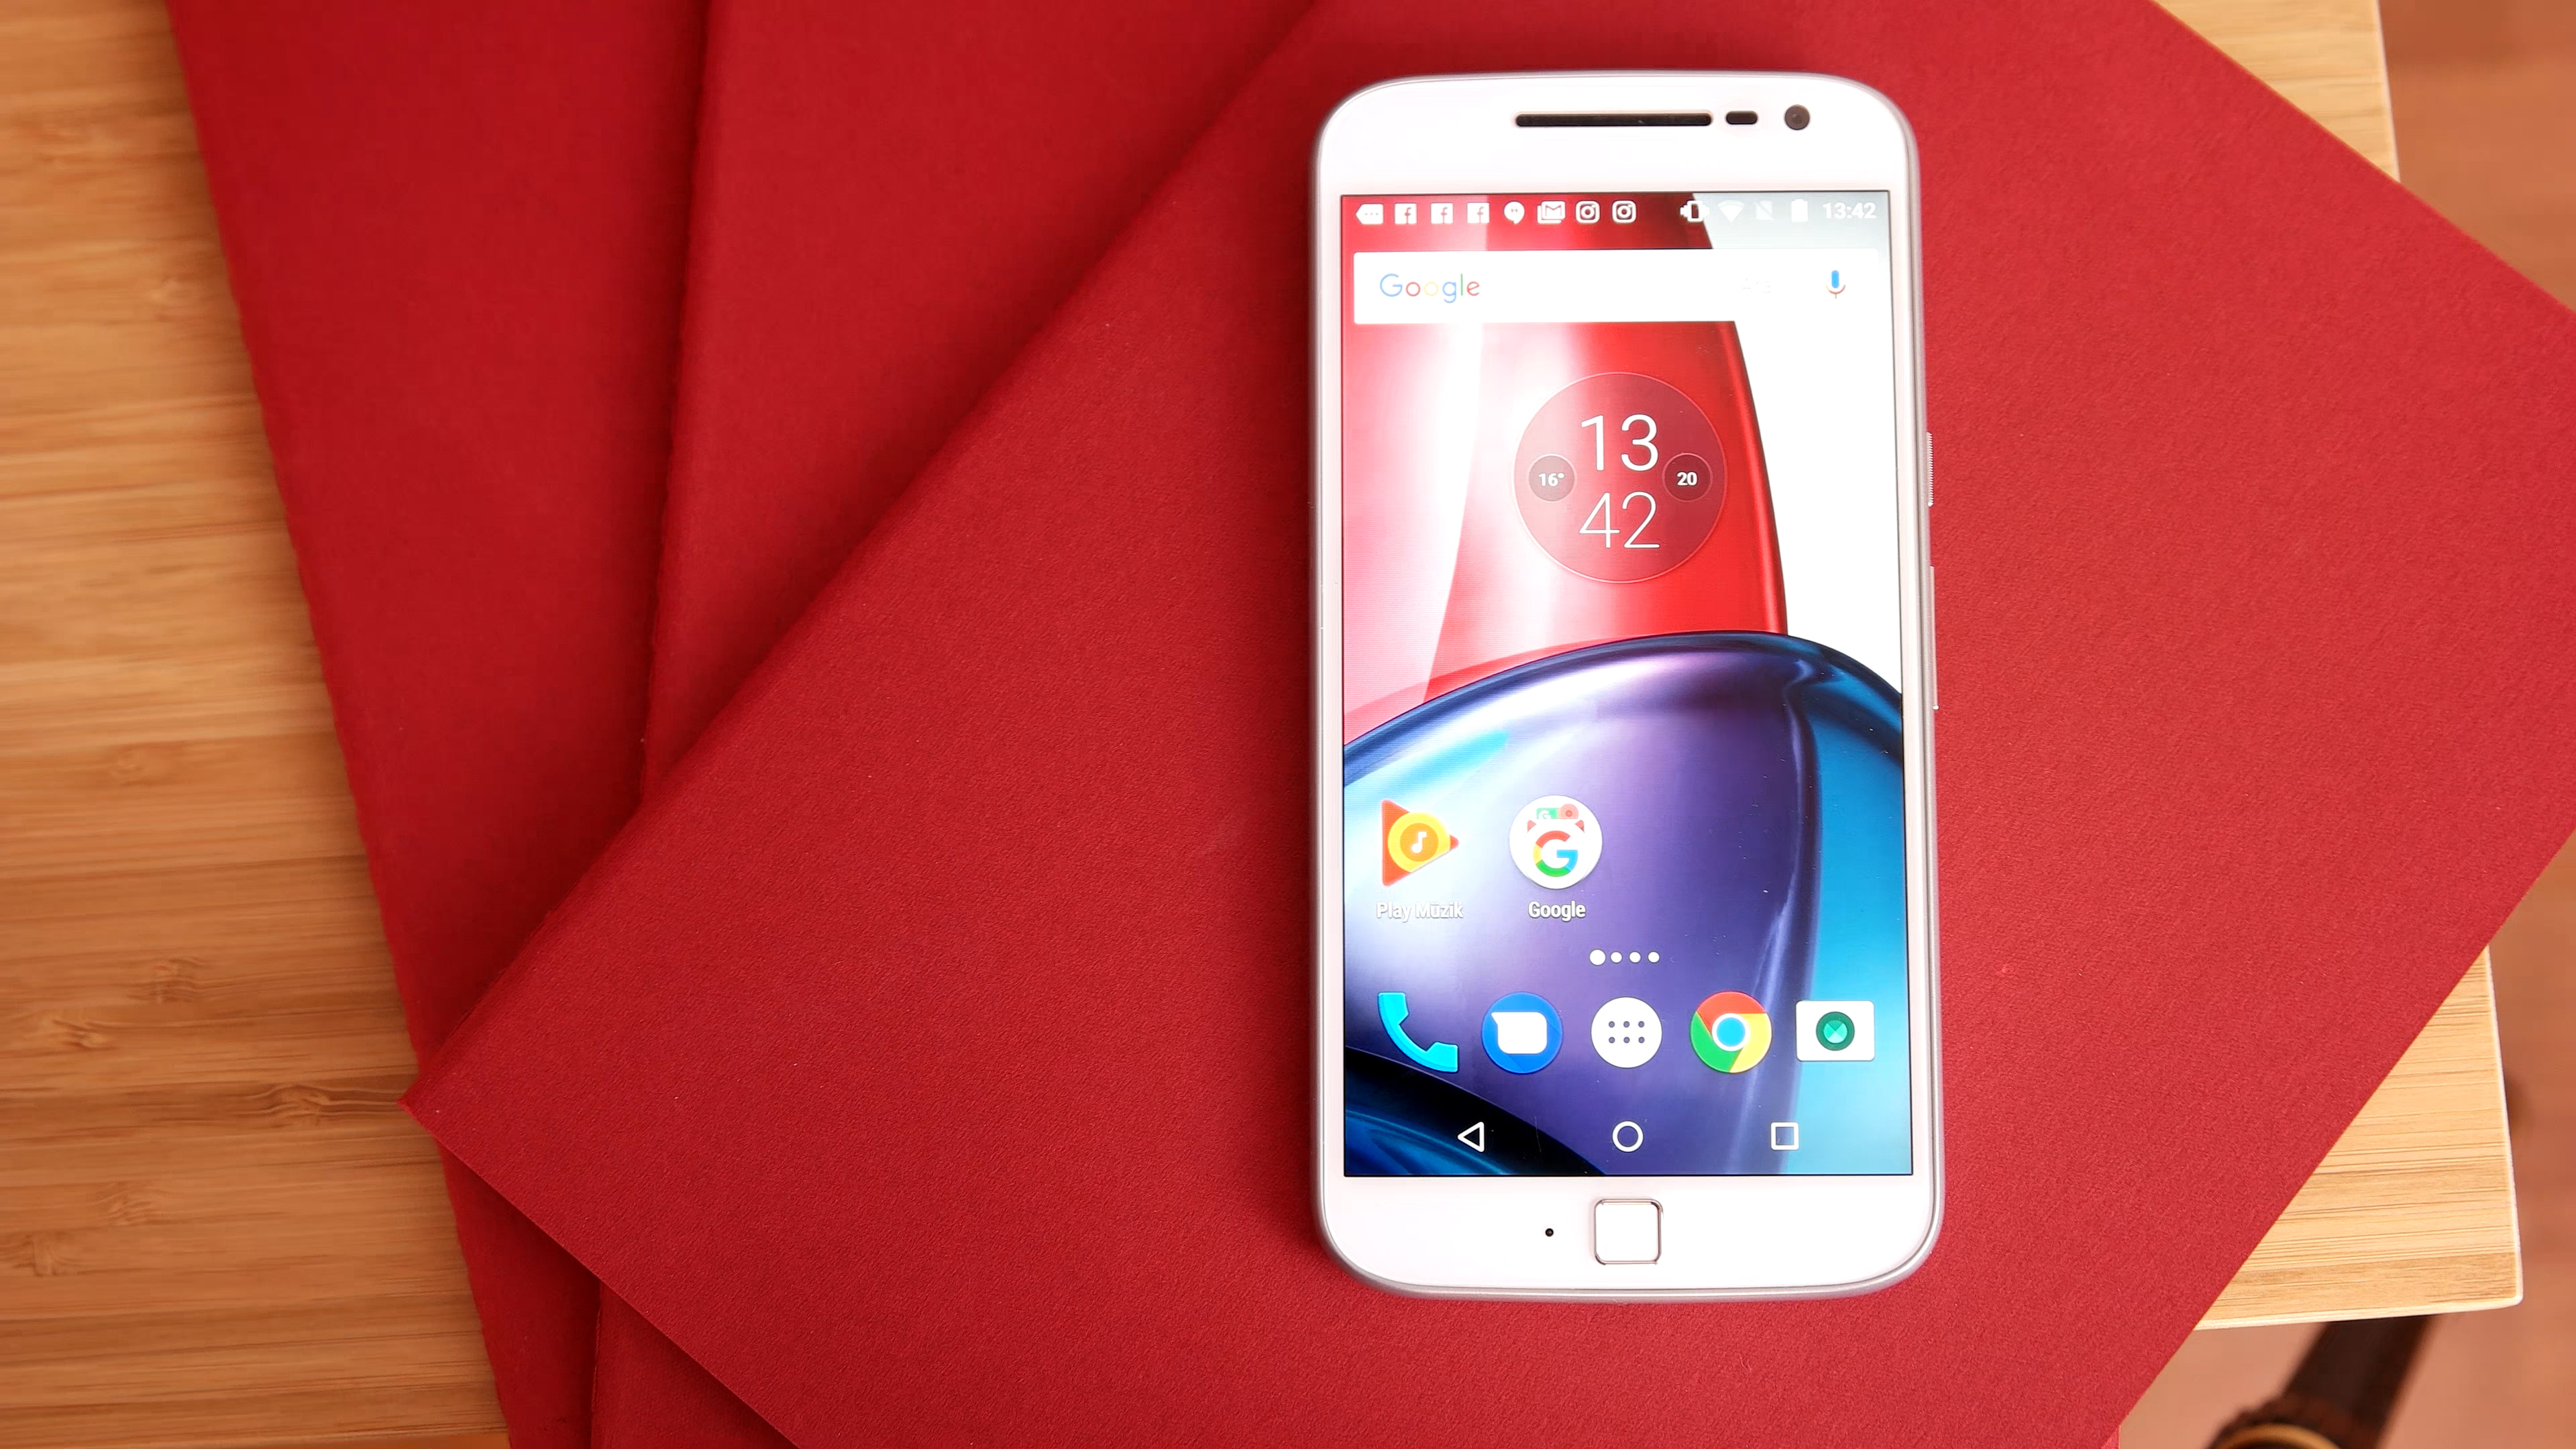 Motorola Moto G4 Plus inceleme videosu 'Yine, yeni, yeniden'